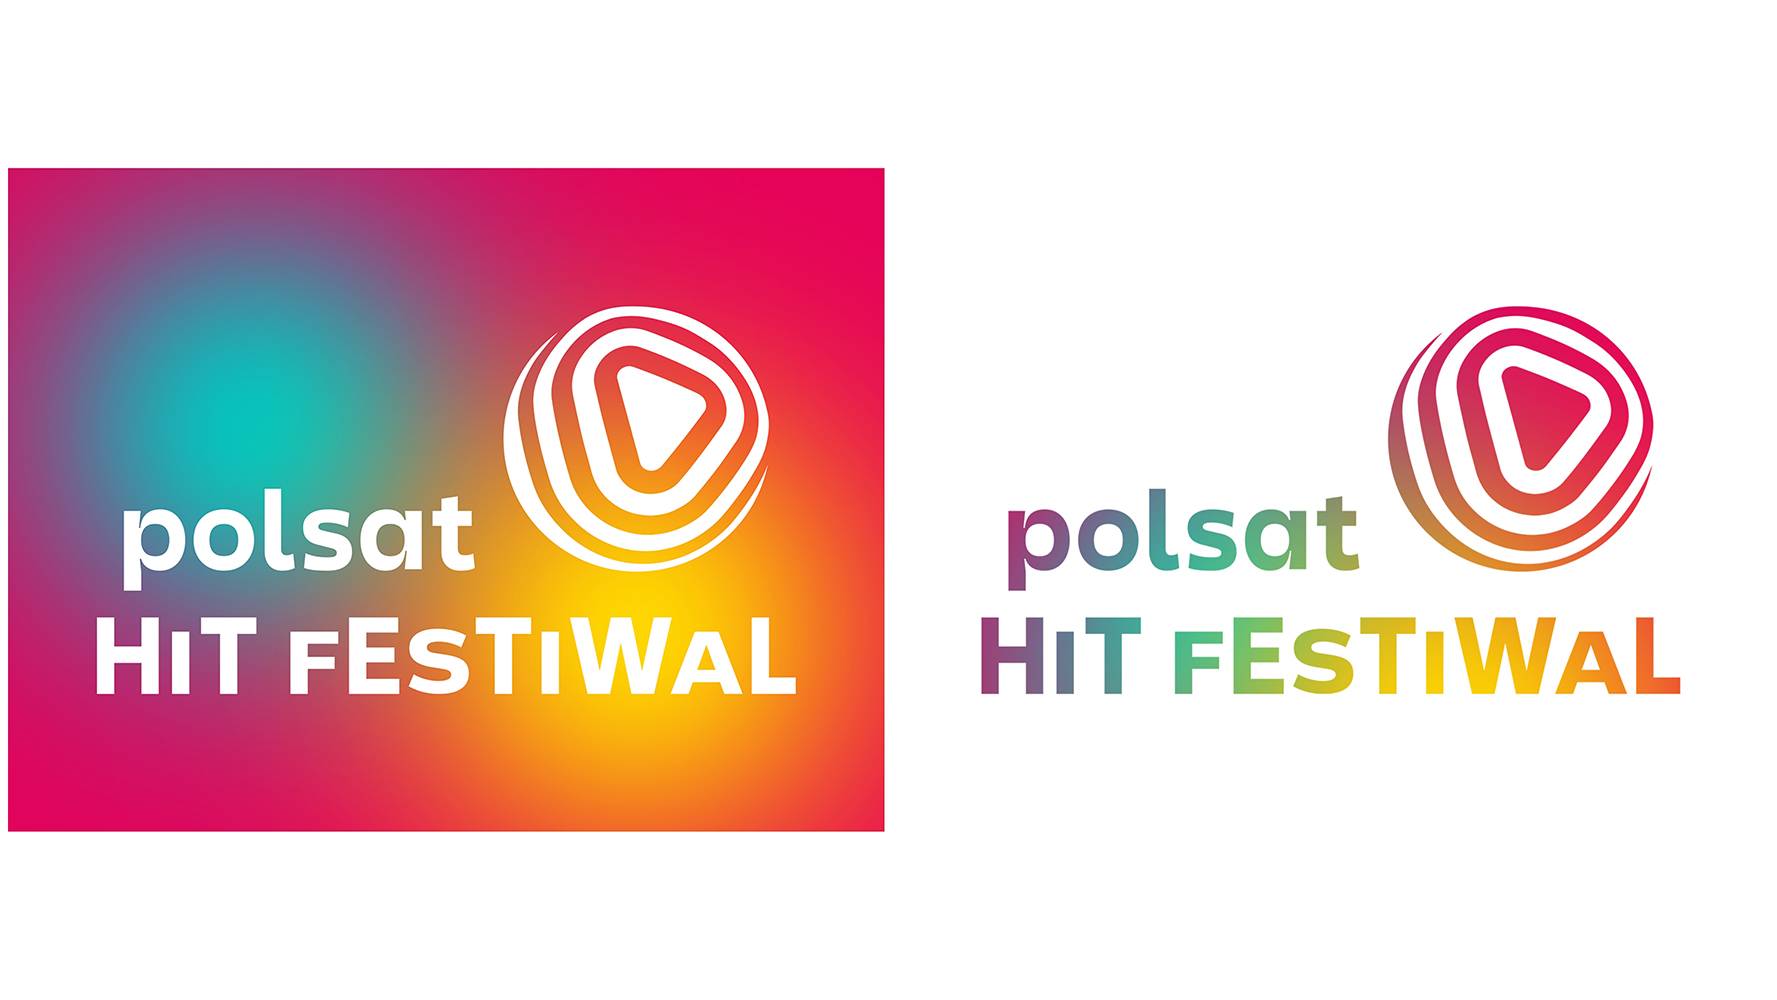 Polsat Hit Festiwal: Nowa nazwa i identyfikacja wizualna eventu